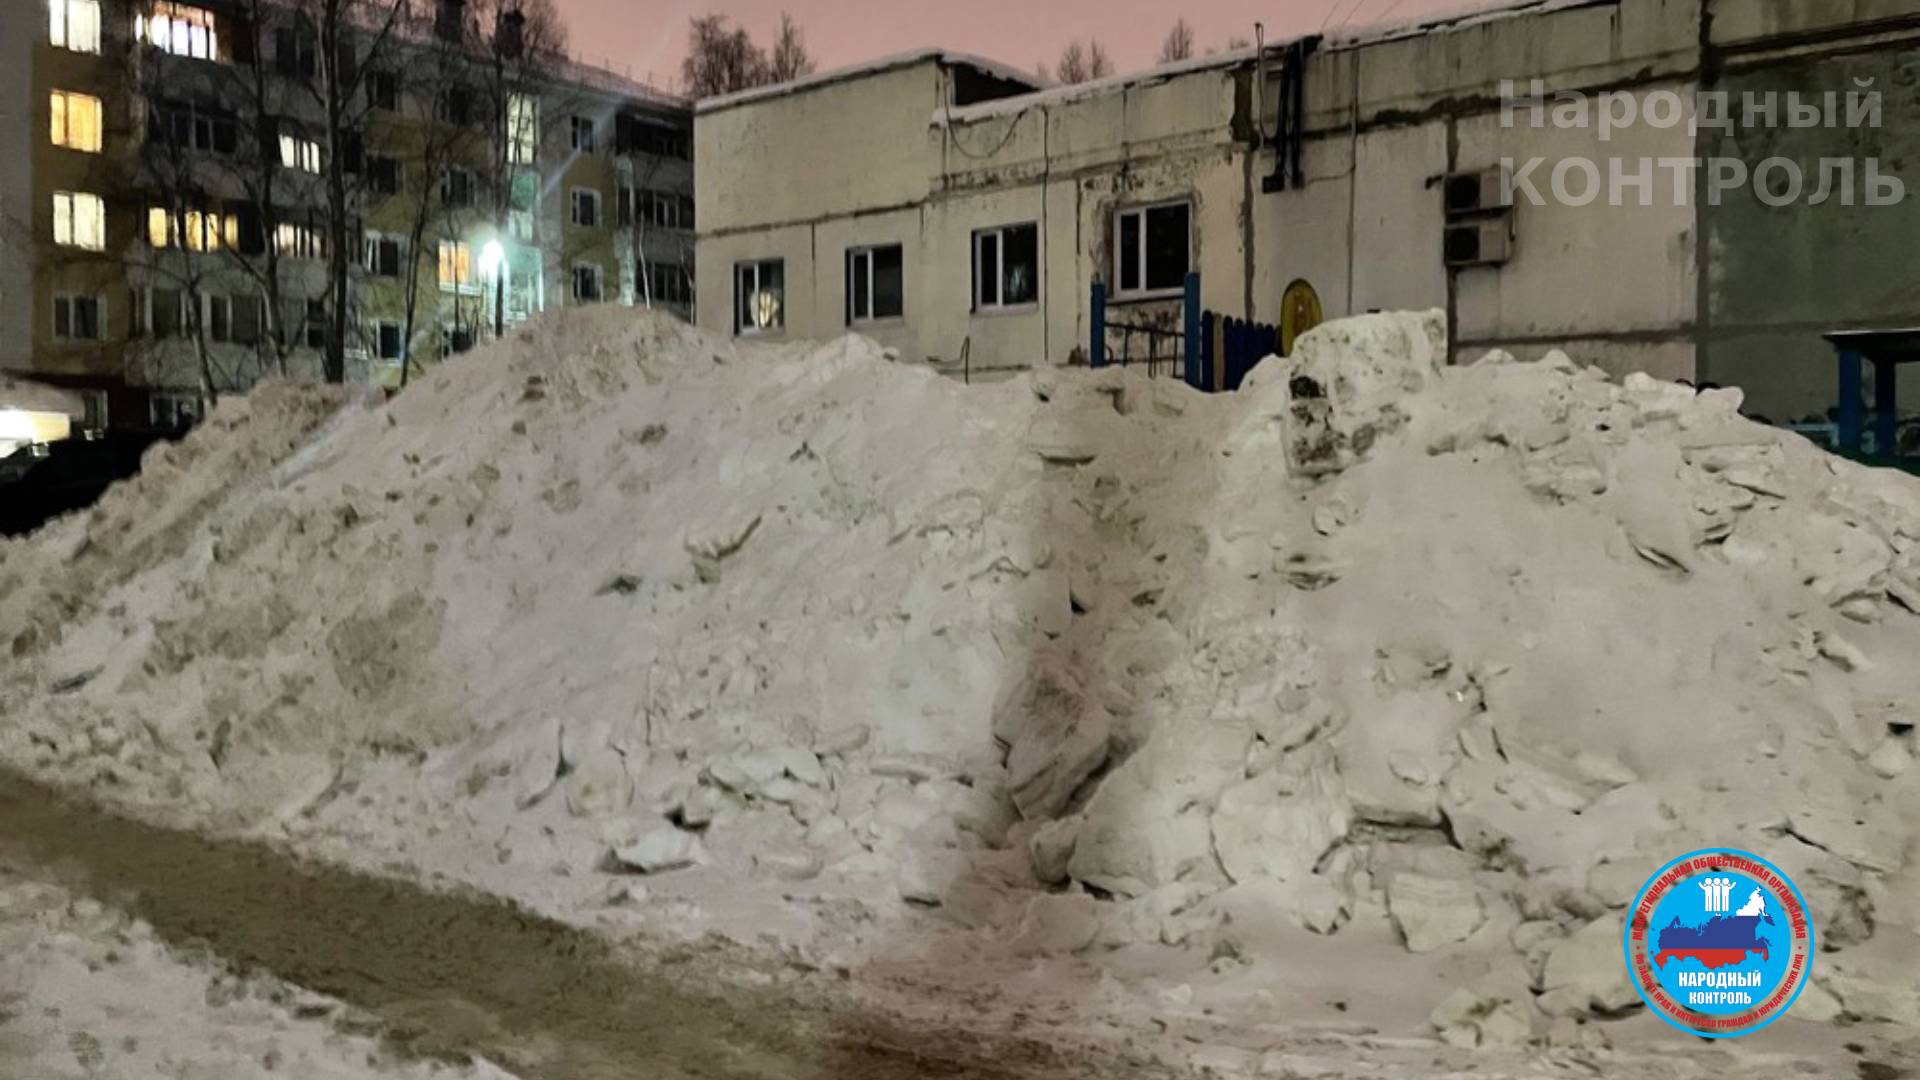 Возле дома снег не убирают в Нижневартовске